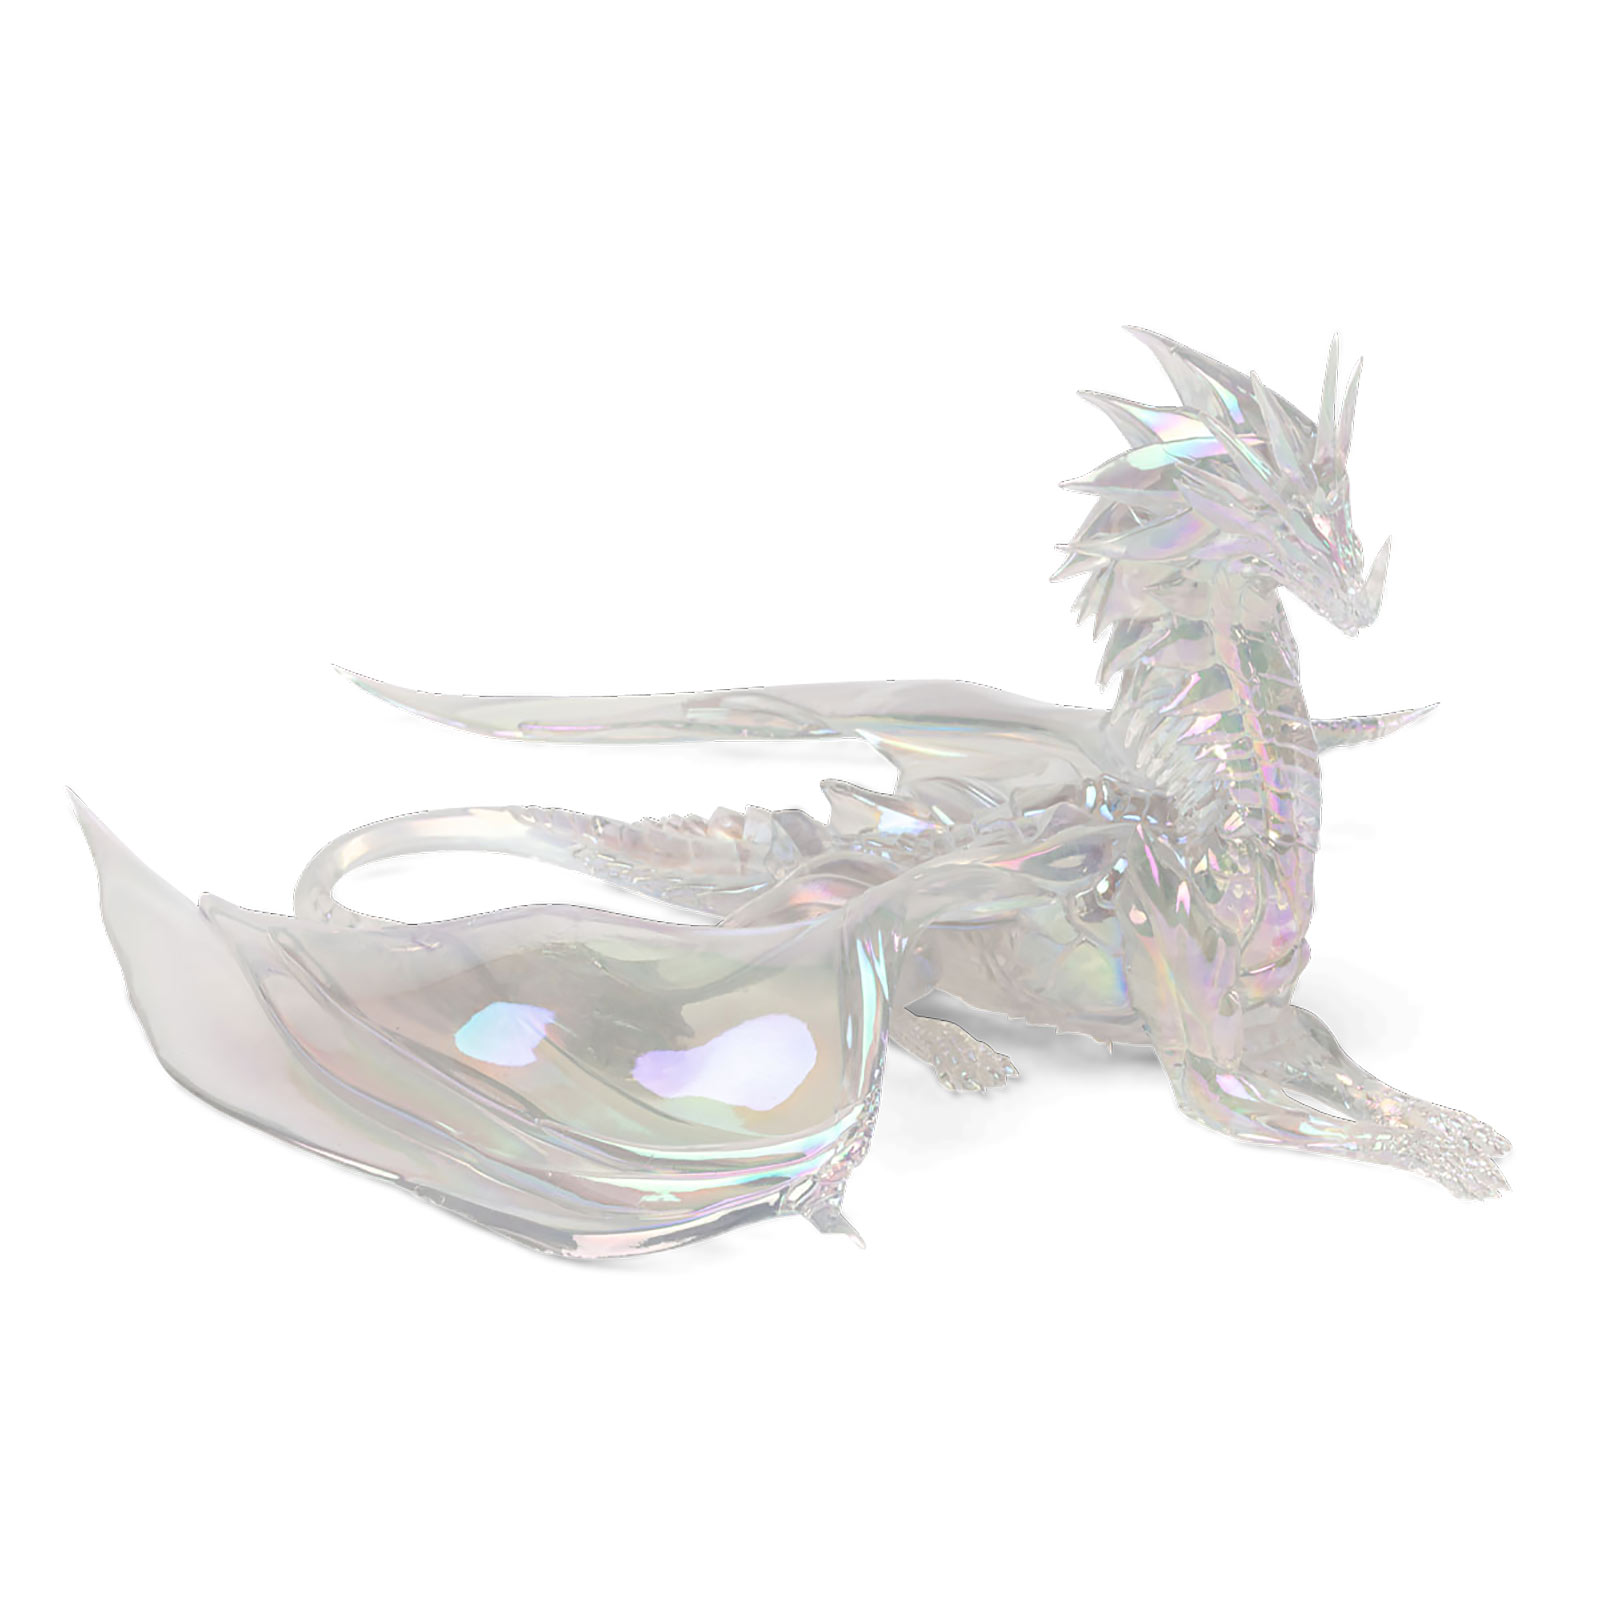 Guild Wars 2 - Aurene Draak Standbeeld